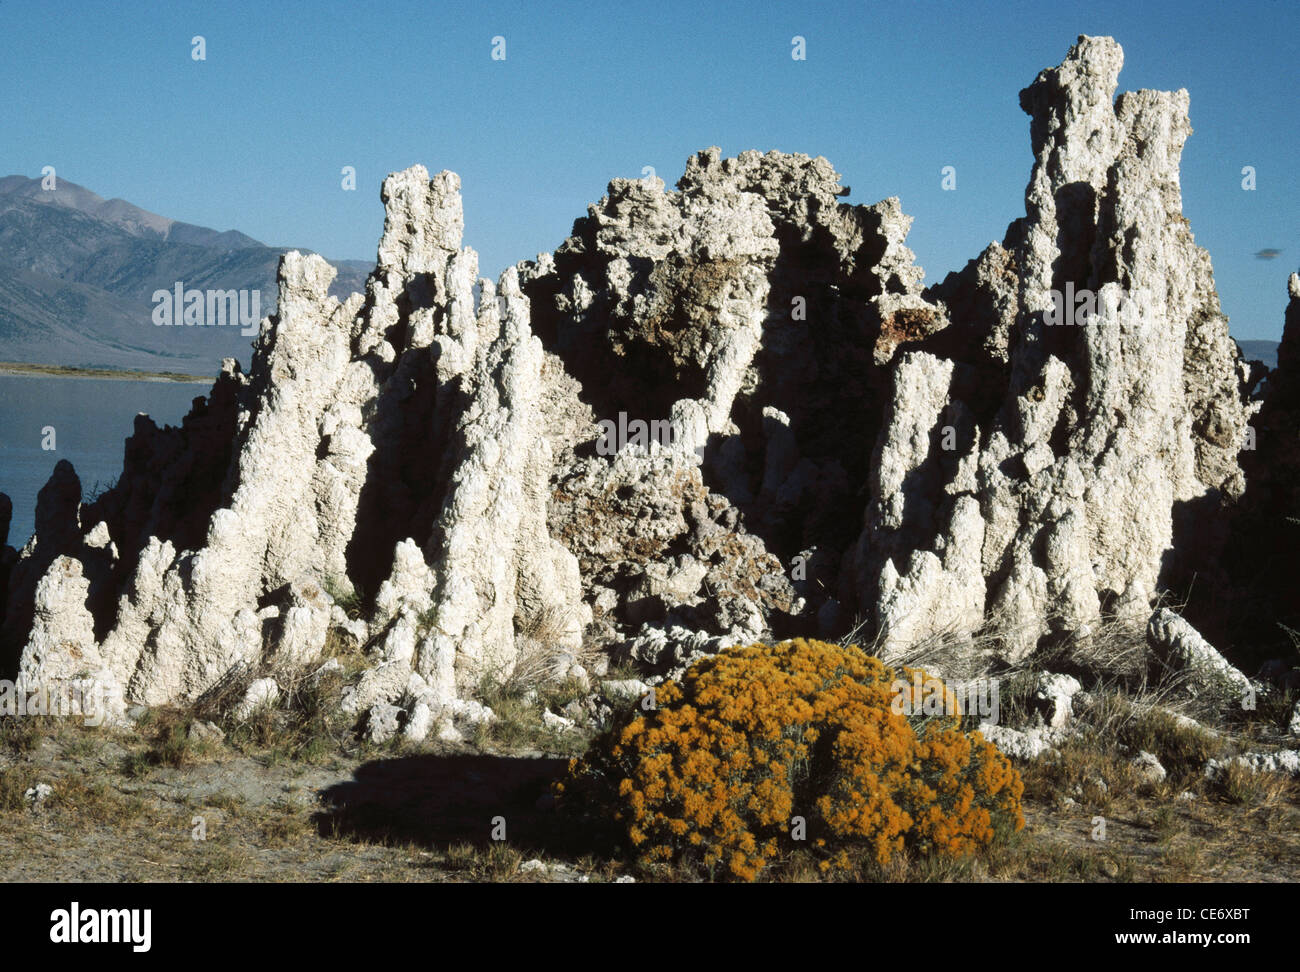 AMA 86222: Tuffstein Stein Felsformation erhebt sich mono Lake Kalifornien USA Vereinigte Staaten von Amerika Stockfoto